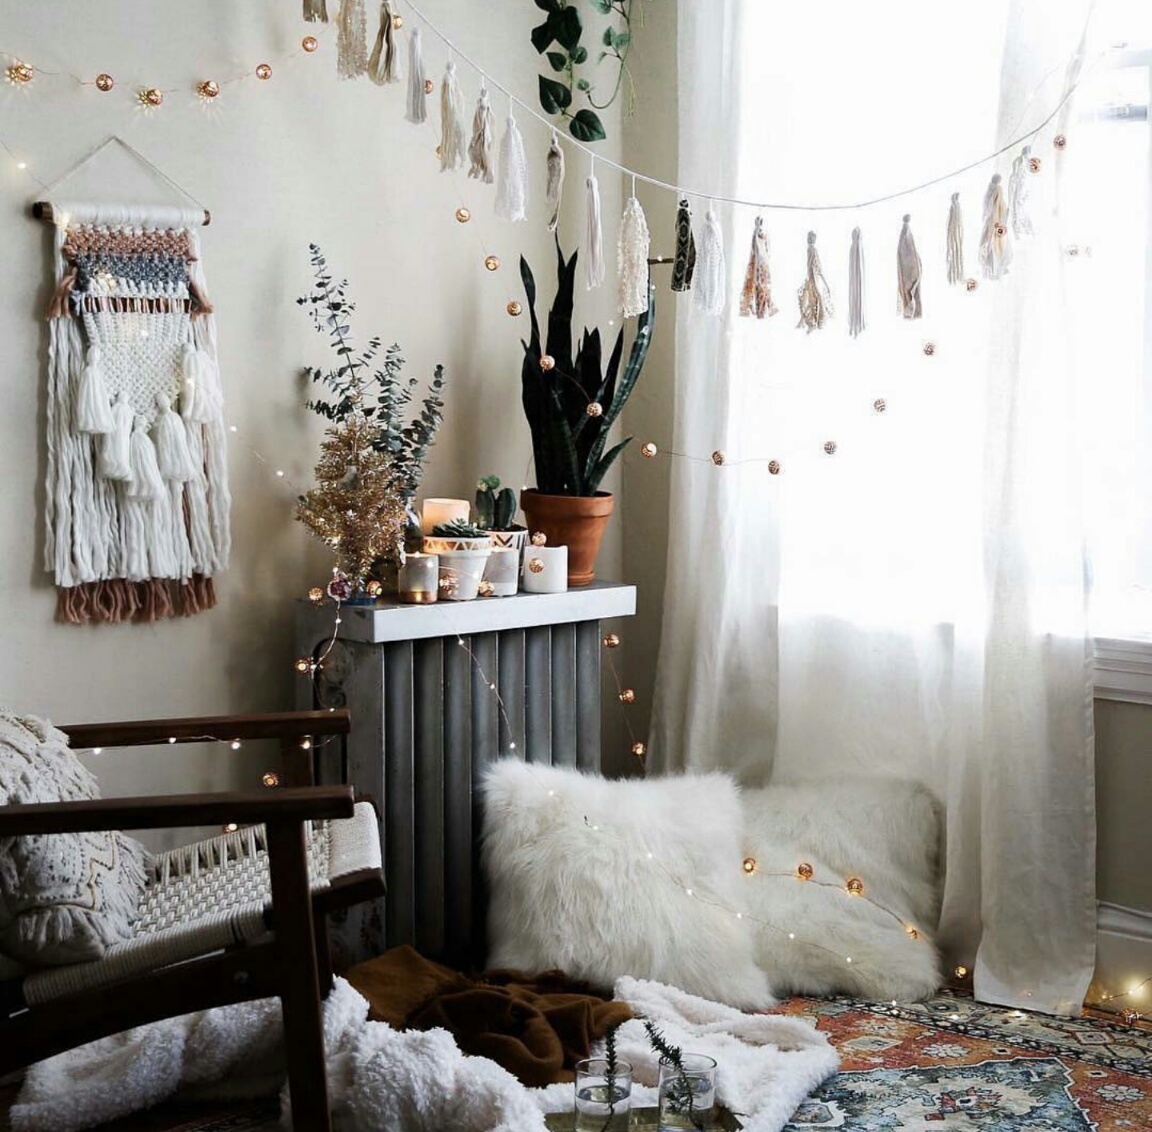 cómo decorar una habitación de manera encantadora, guirnaldas bonitas y detalles en color blanco, ideas decoración salón